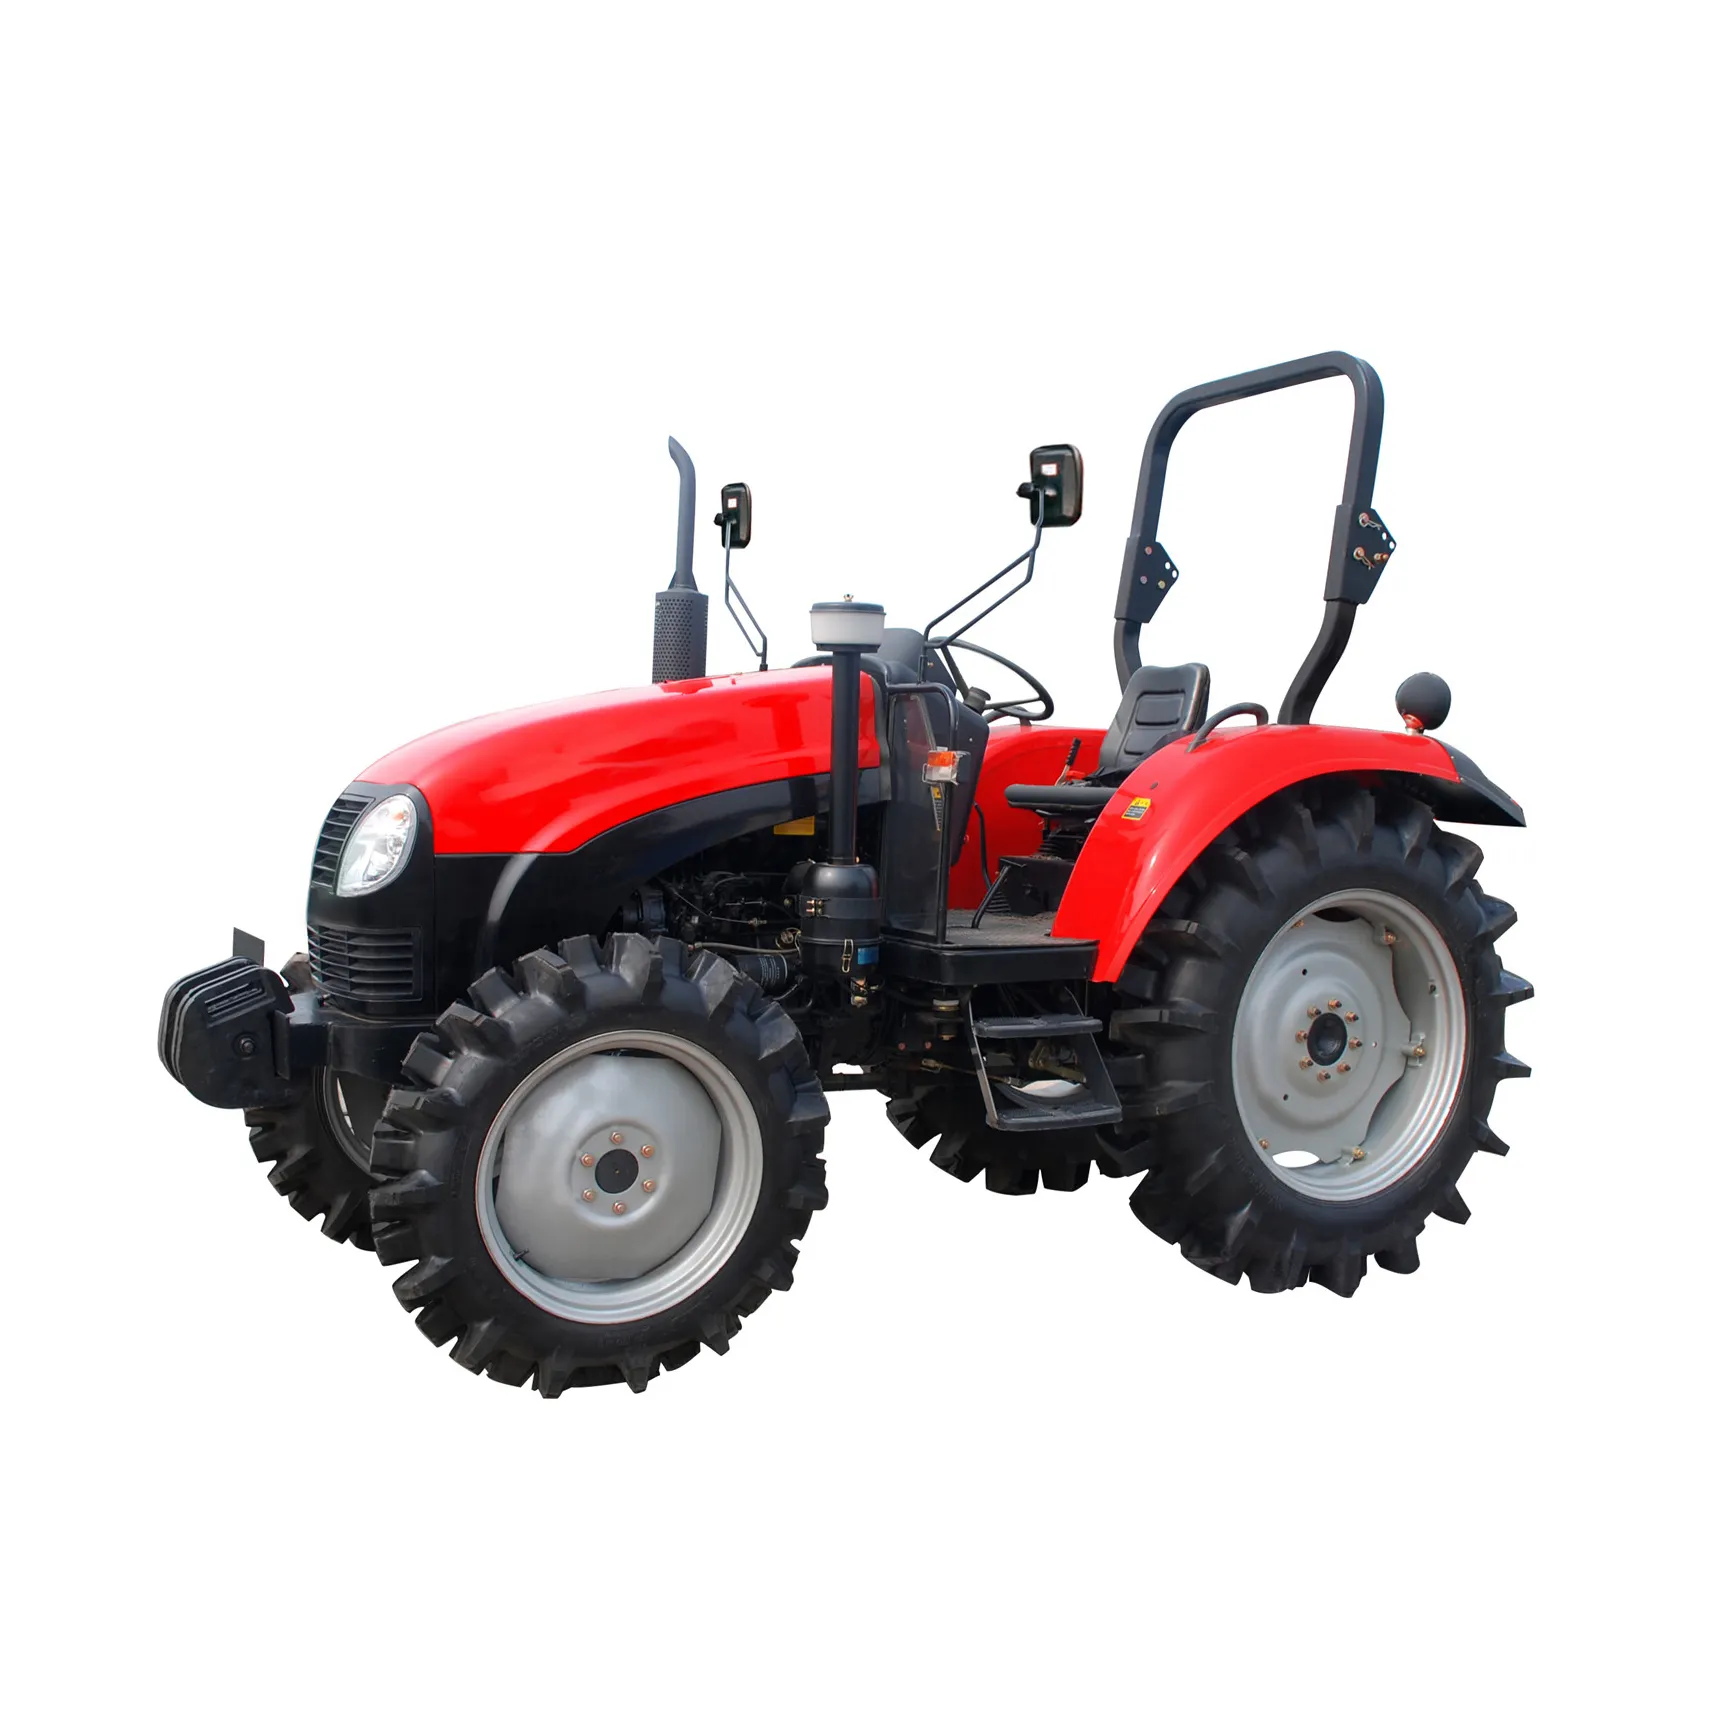 Çin ünlü marka YTO tarım traktör LG1504 150HP çiftlik traktörü satılık